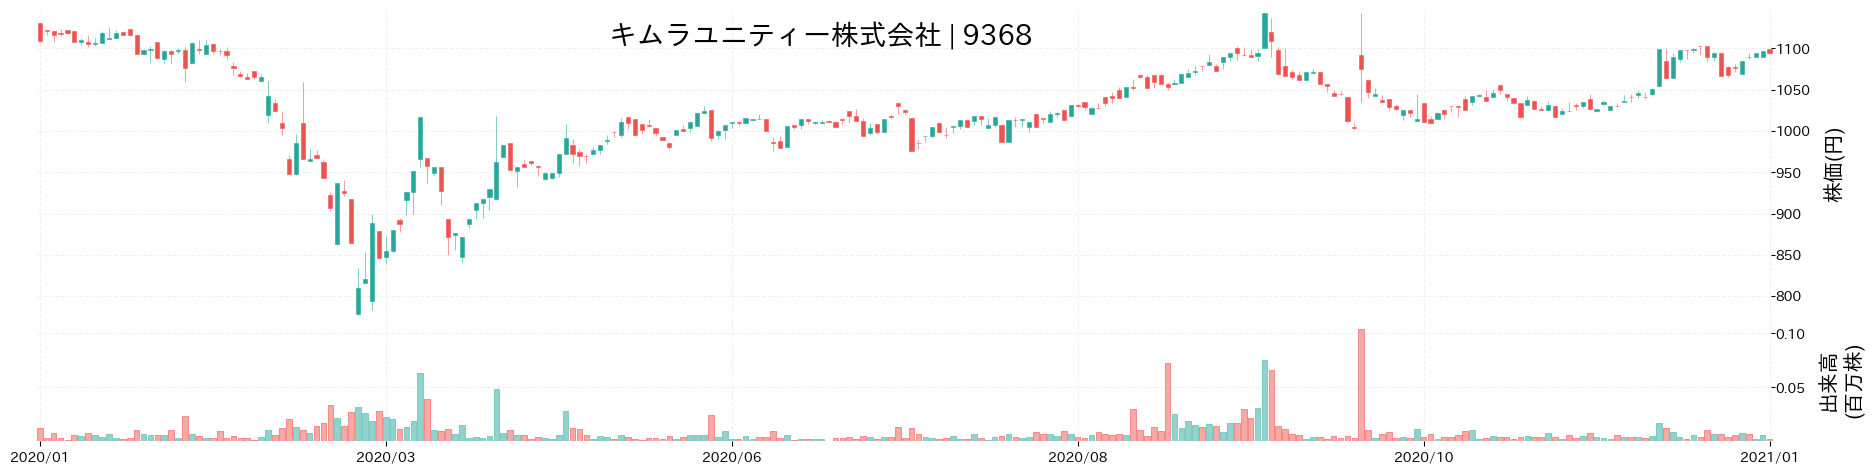 キムラユニティーの株価推移(2020)